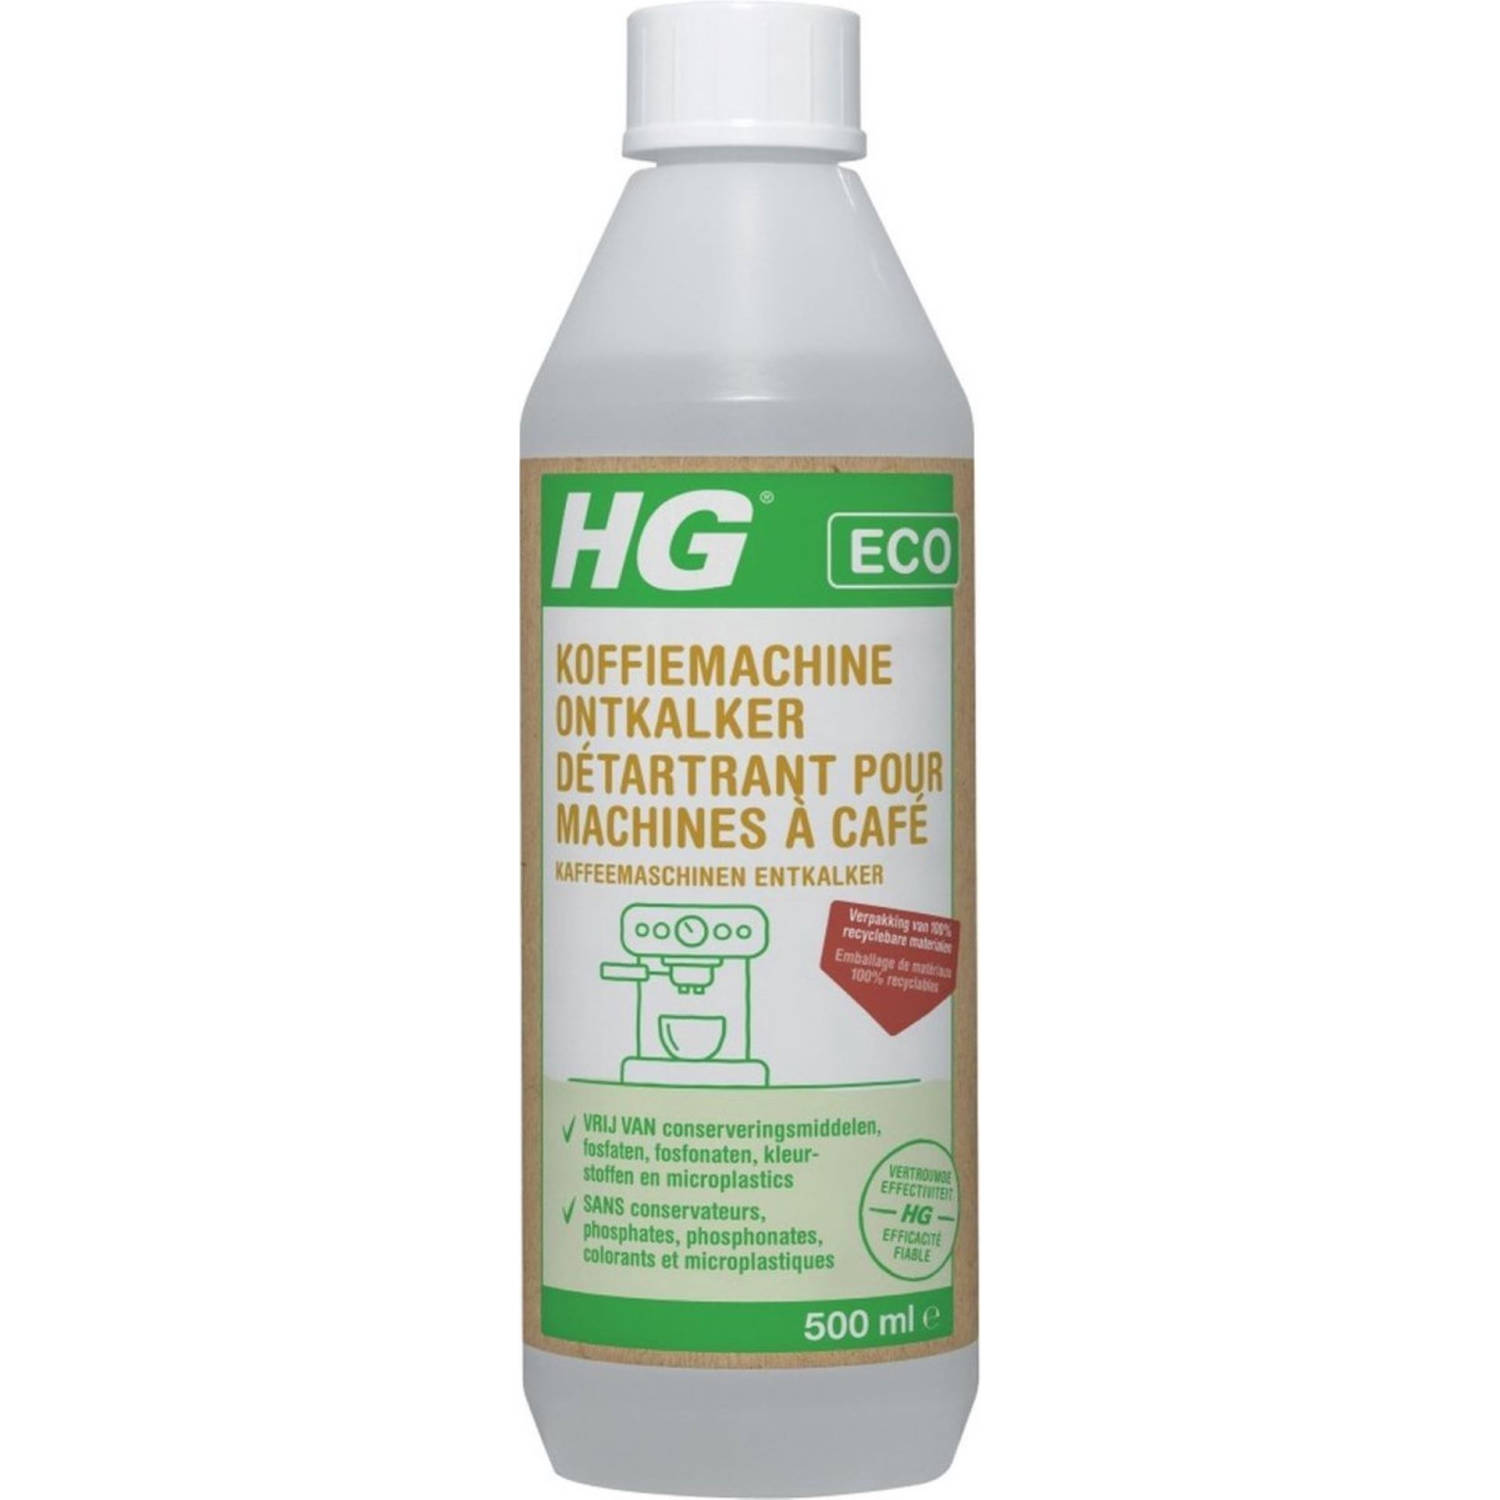 HG ECO koffiemachine ontkalker citroenzuur - 2 Stuks! - 500 ml - de milieubewuste ontkalker voor uw espresso- en padkoffiemachines